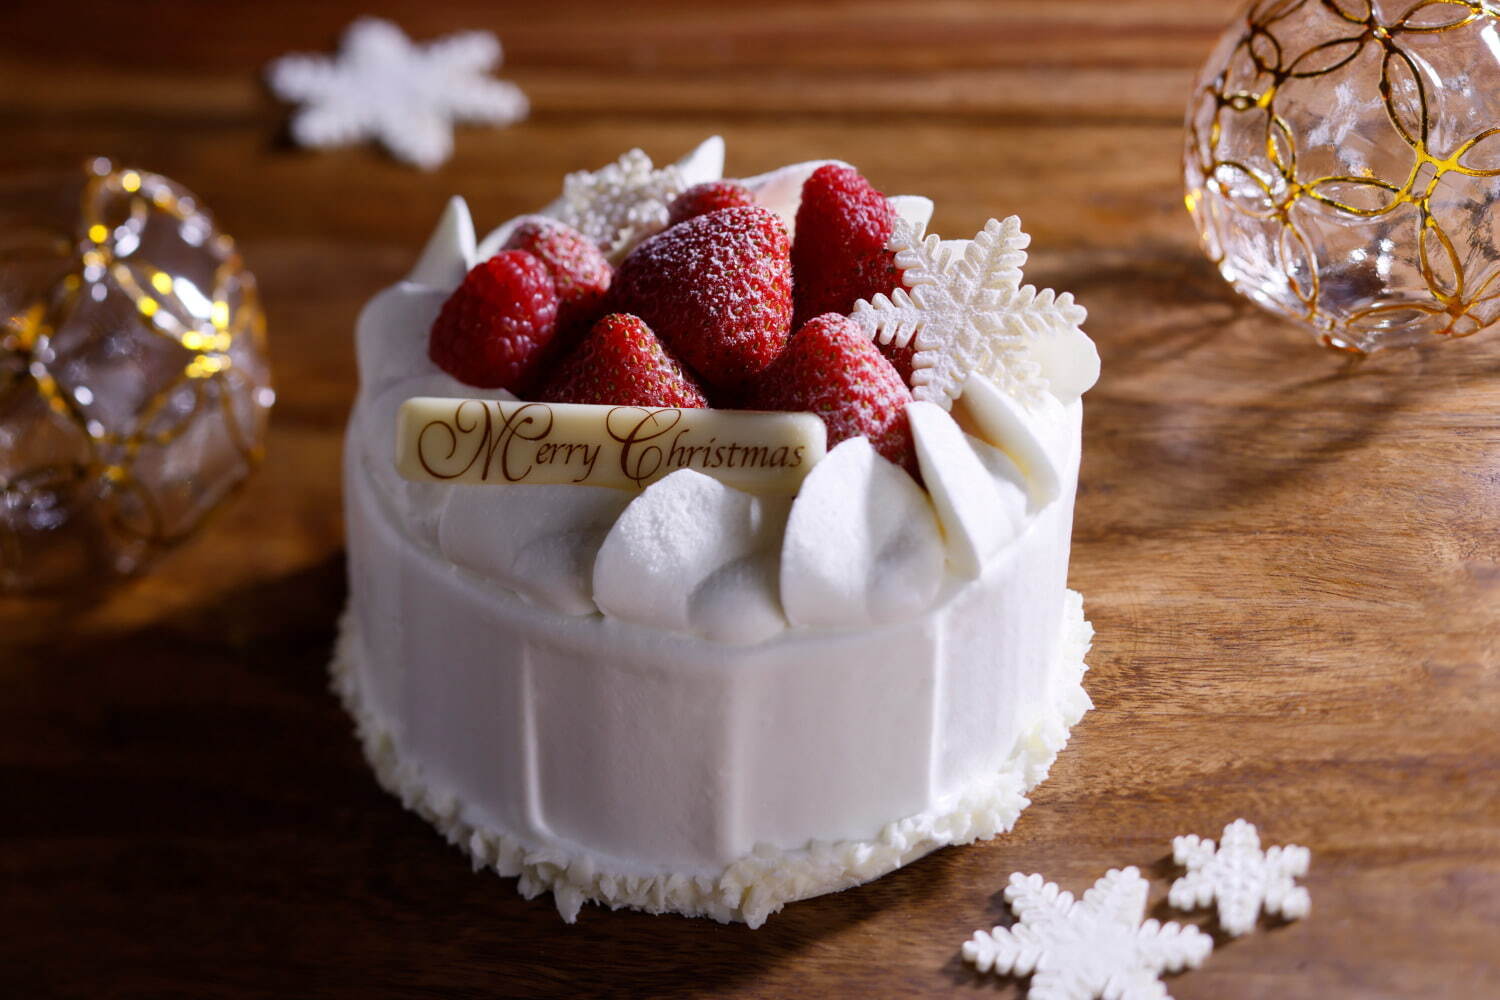 クリスマスショートケーキ “深紅”(サイズ 直径12cm) 4,320円 ※30個限定(先着順)